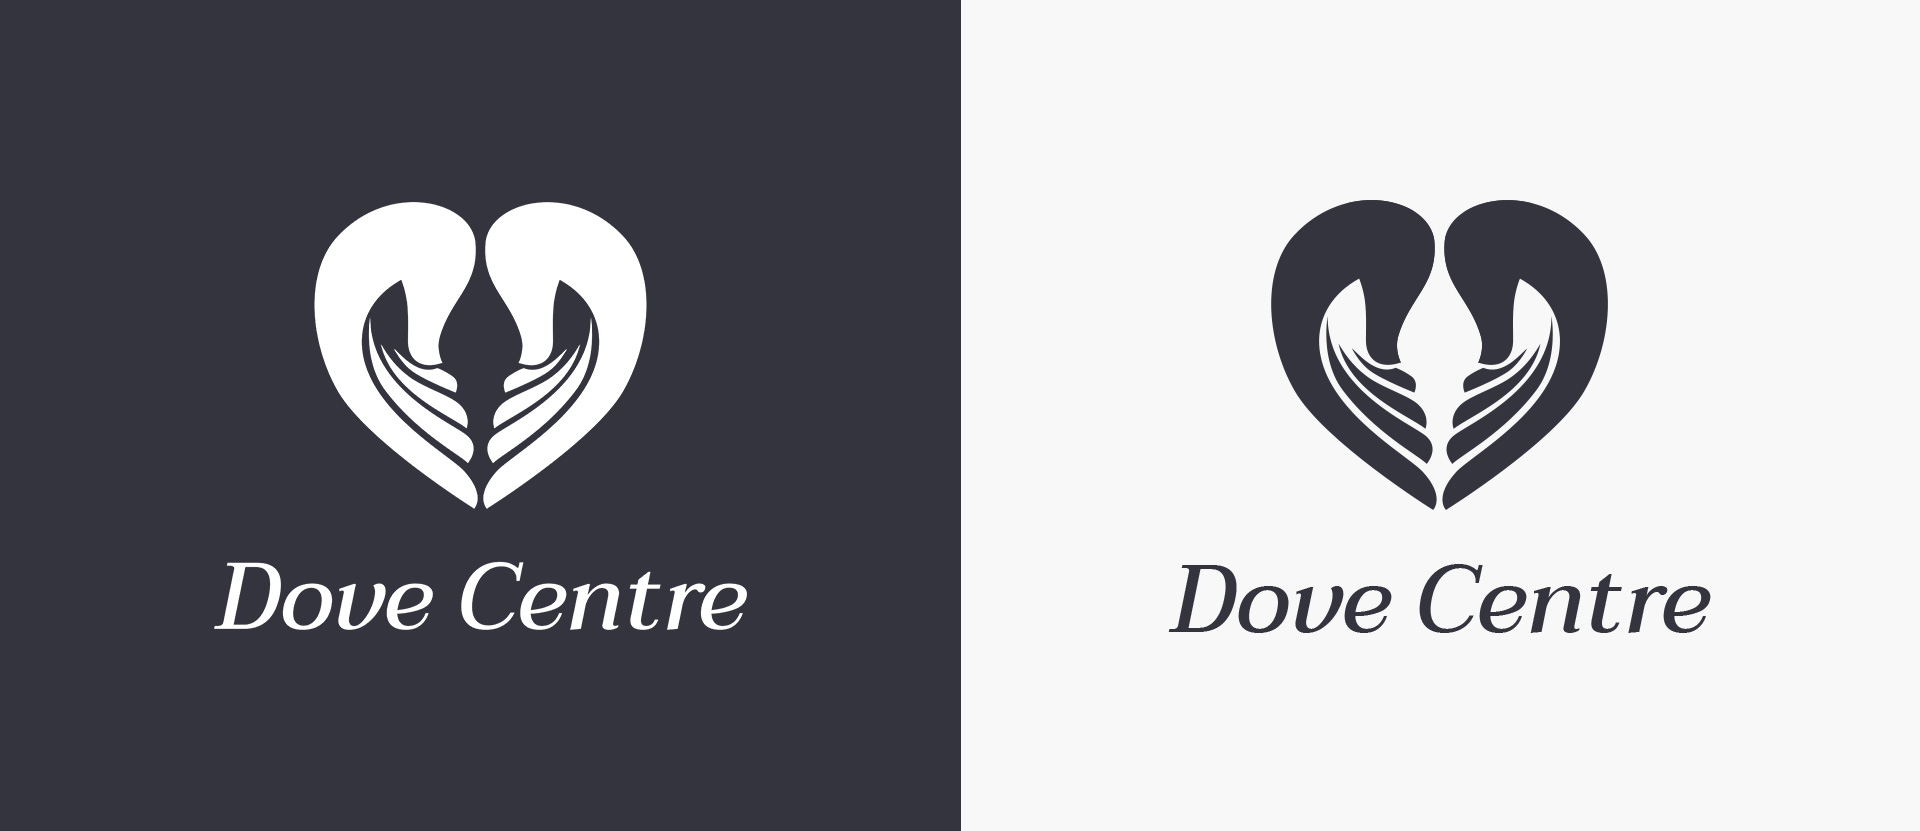 Dove Centre black and white